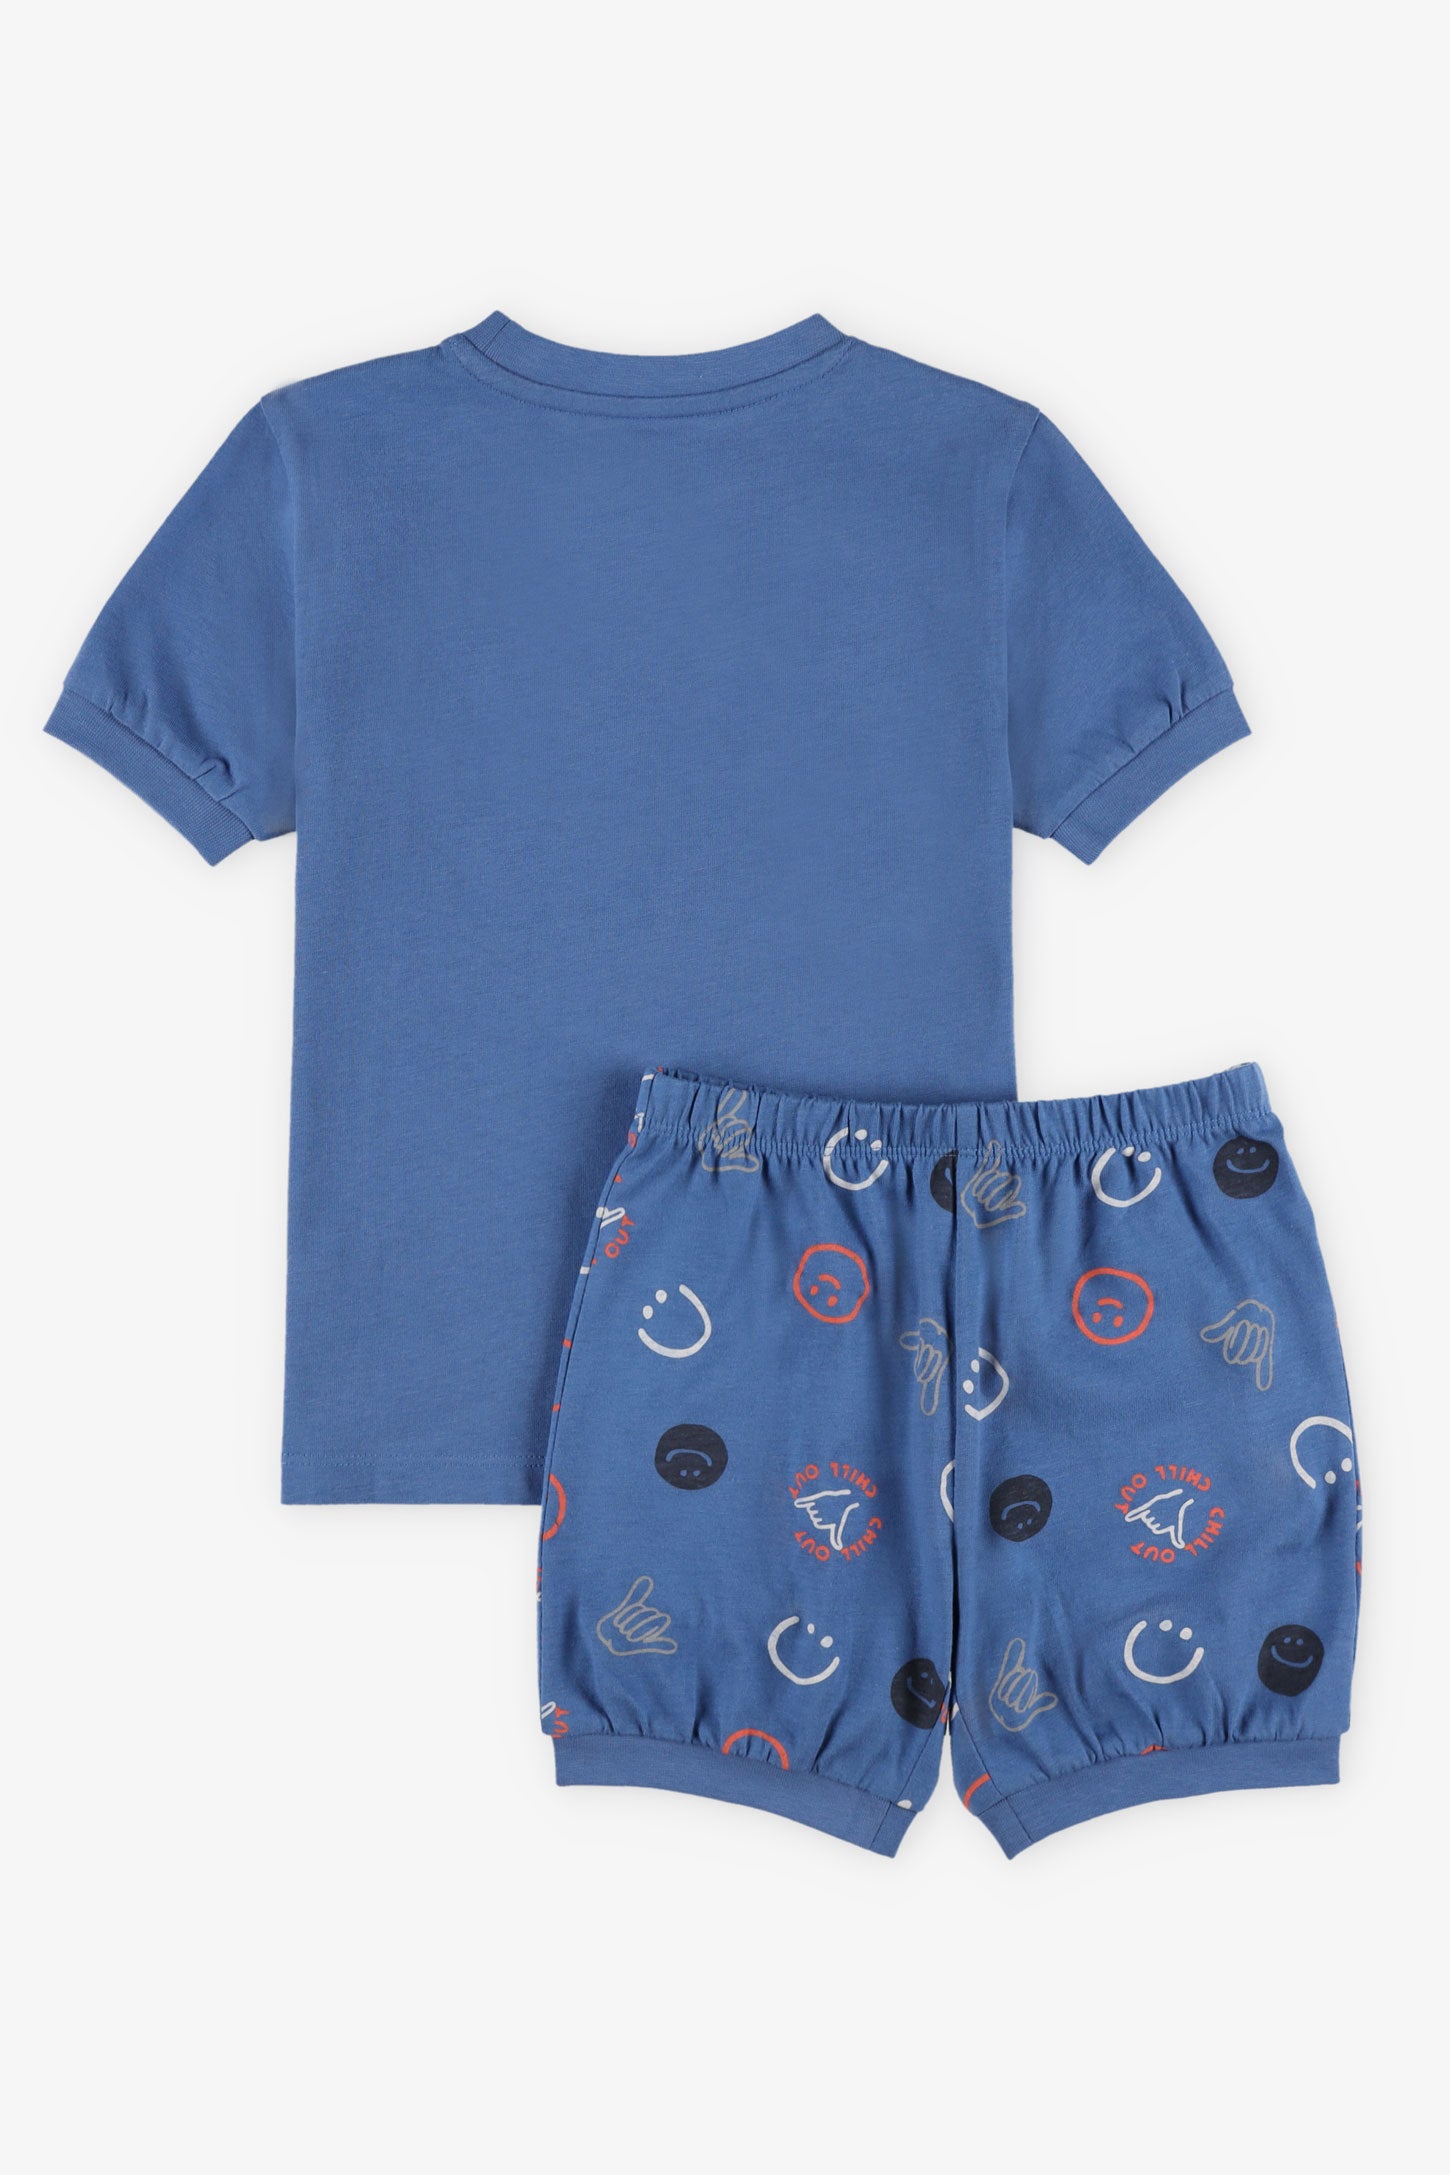 Pyjama 2-pièces, 2/35$ - Enfant garçon && BLEU